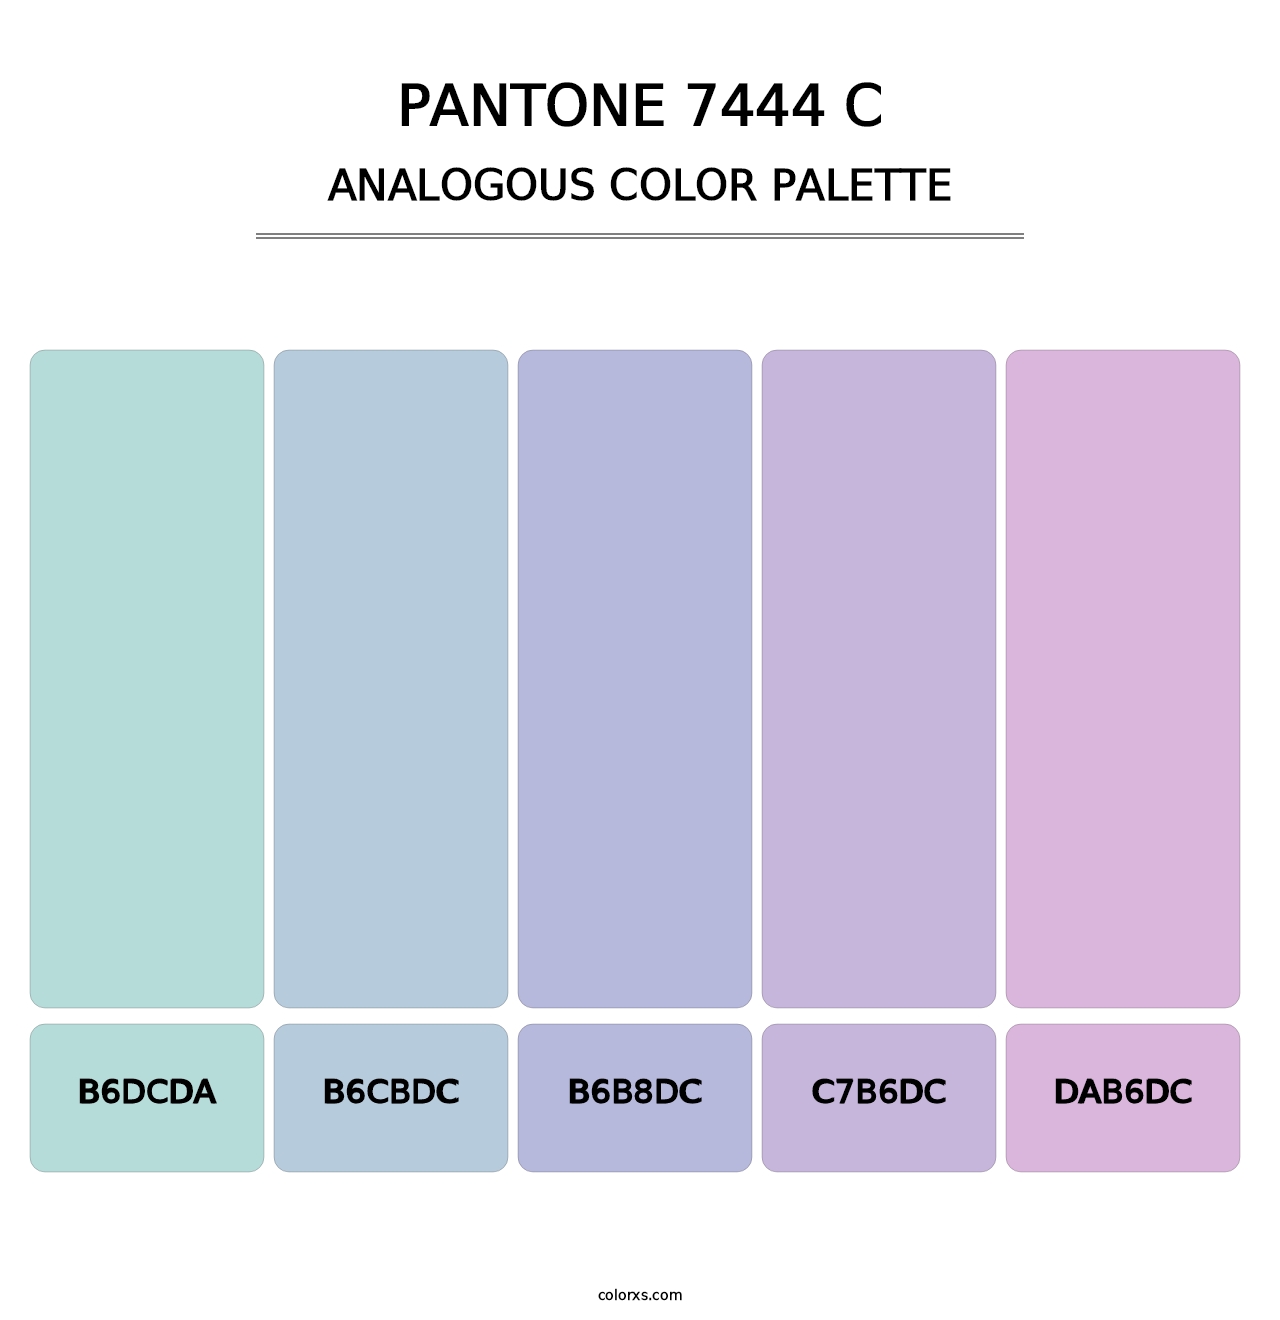 PANTONE 7444 C - Analogous Color Palette